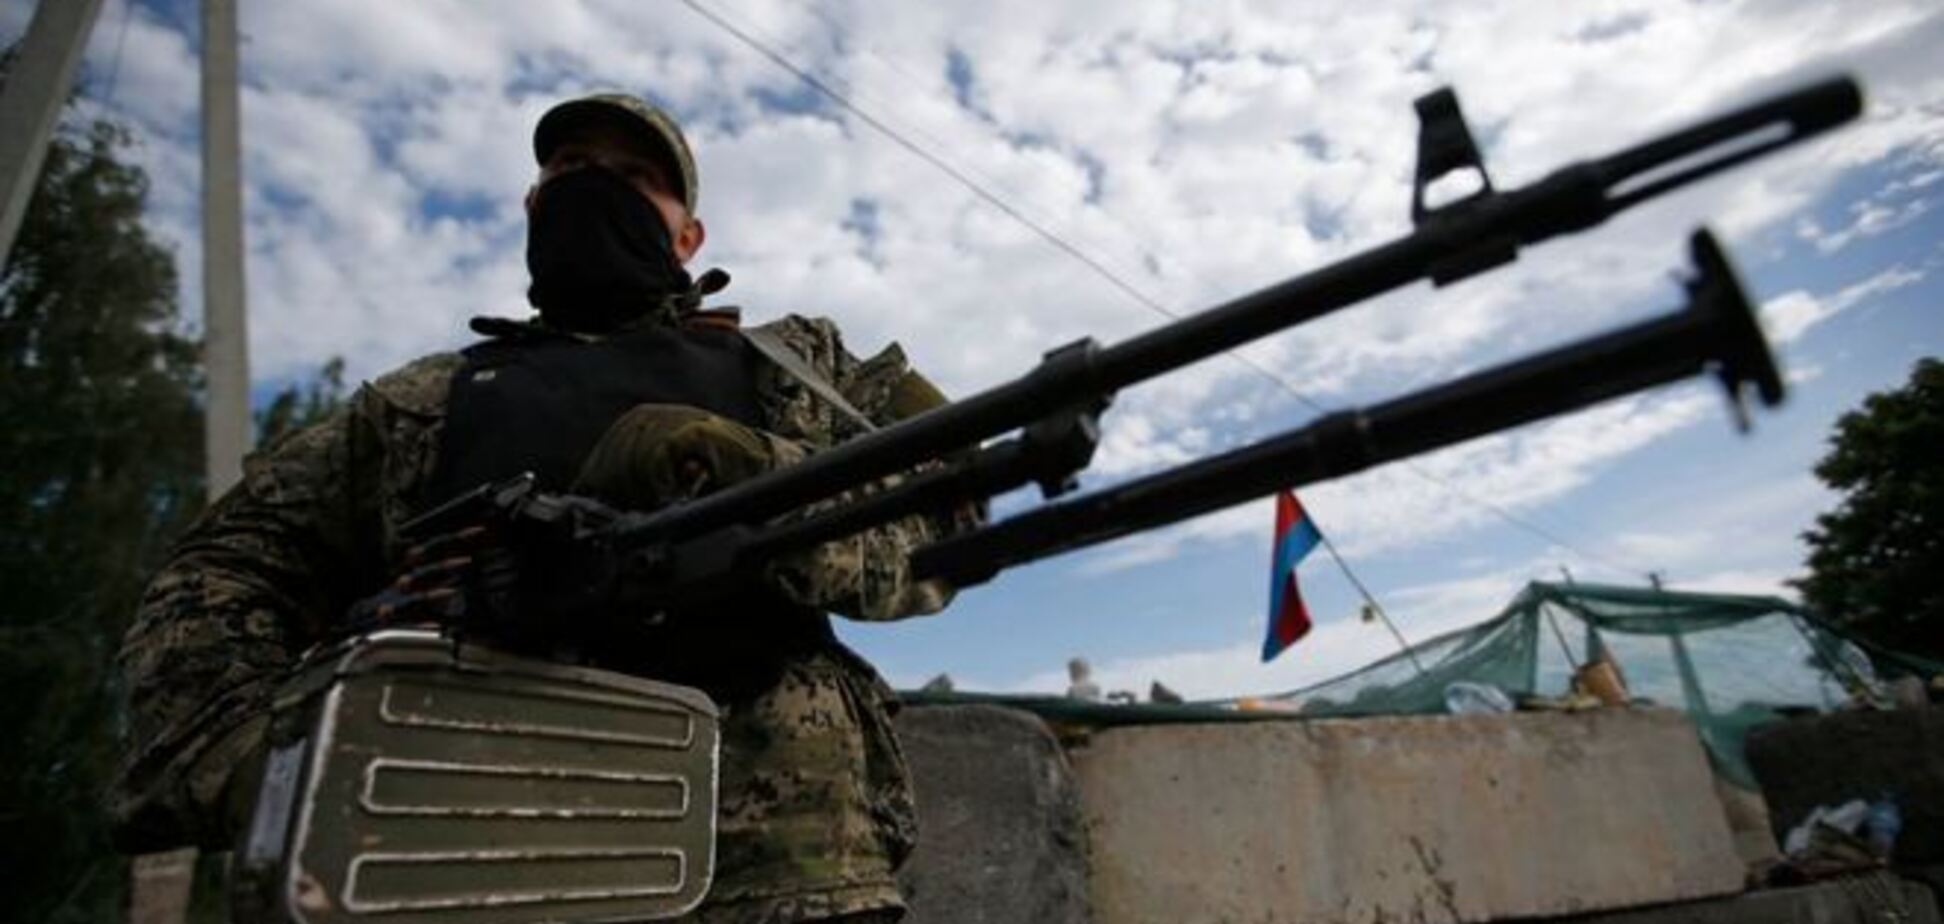 Террористы воюют с оружием, которое не производится в Украине - независимое исследование